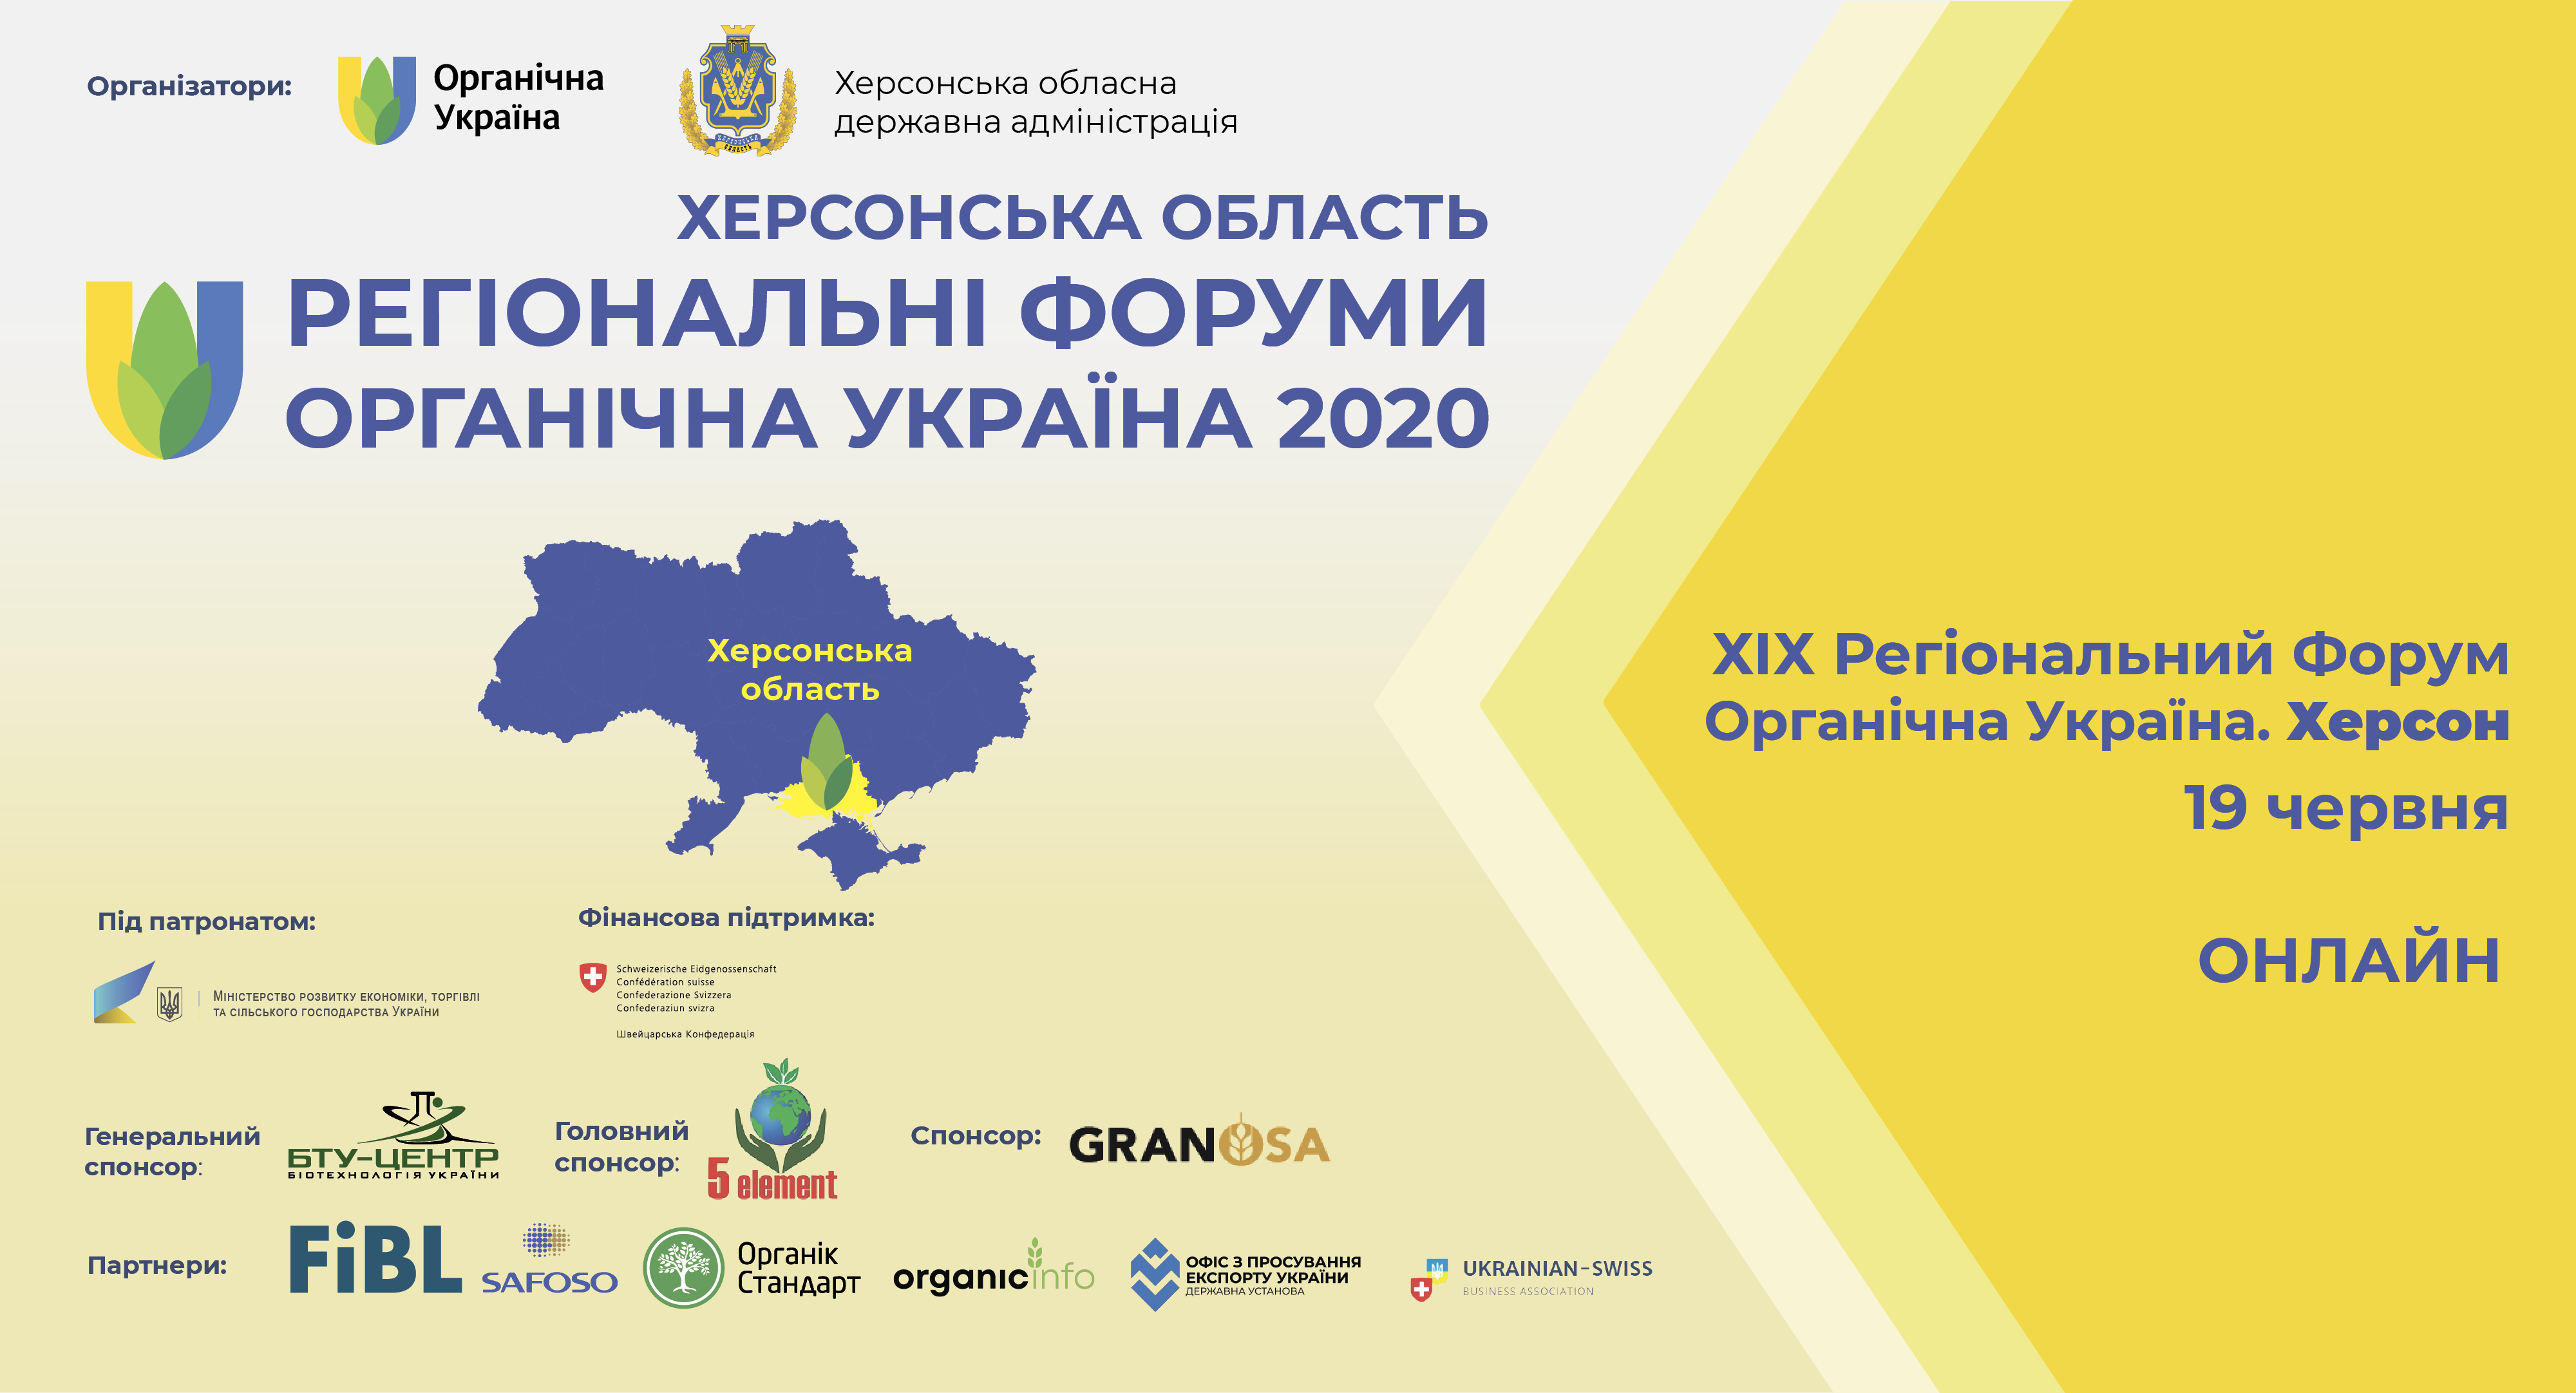 Запрошуємо на регіональний  Форум «Органічна Україна. Херсон».